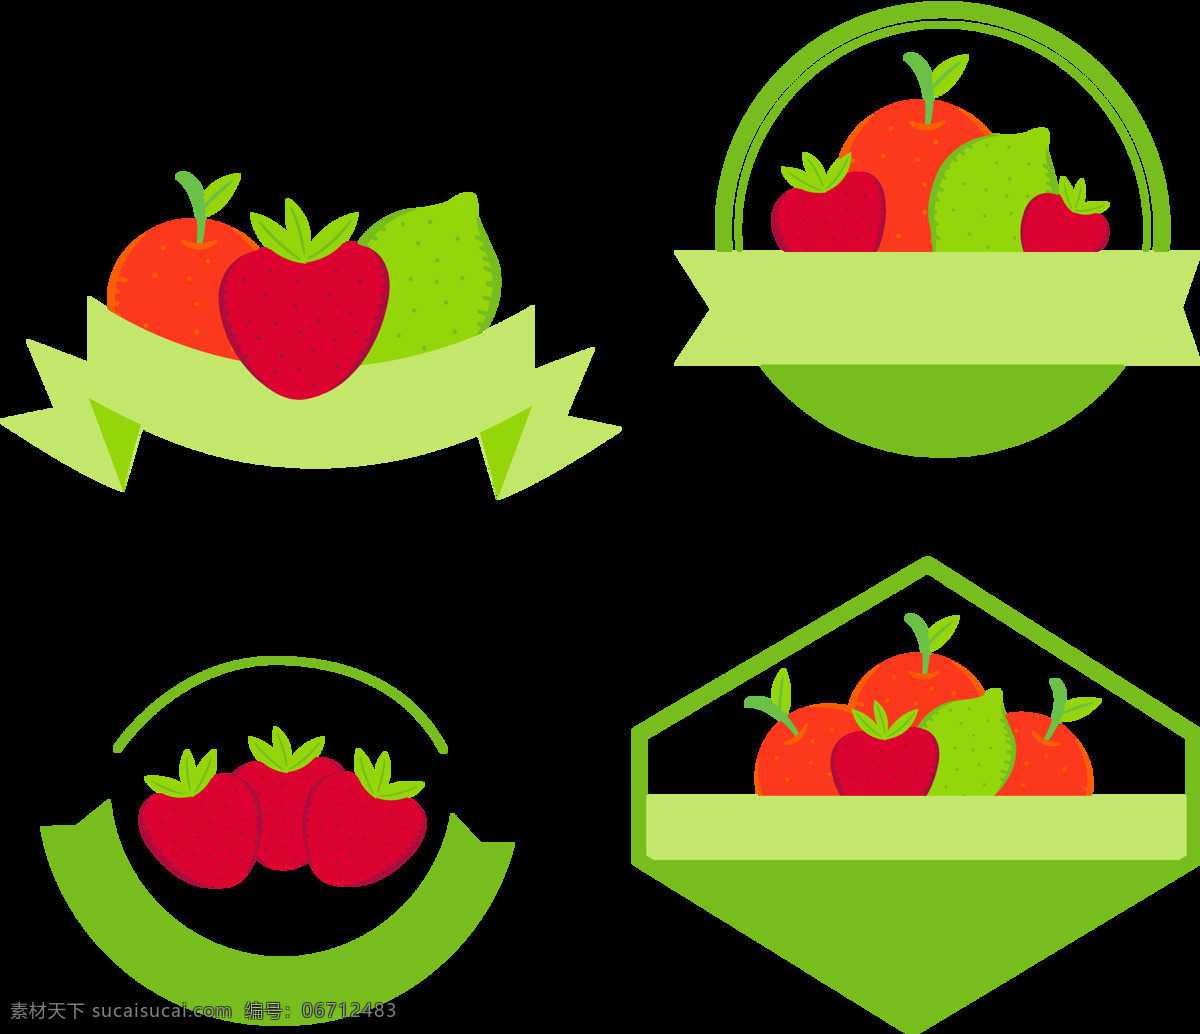 绿色 水果 标签 图标 免 抠 透明 图 层 水果标签 彩色水果卡片 水果花边 彩色图标 彩色卡片 清新素材 手绘水果素材 促销标签 彩色标签 手绘水果 水果促销素材 手绘标签 清新水果